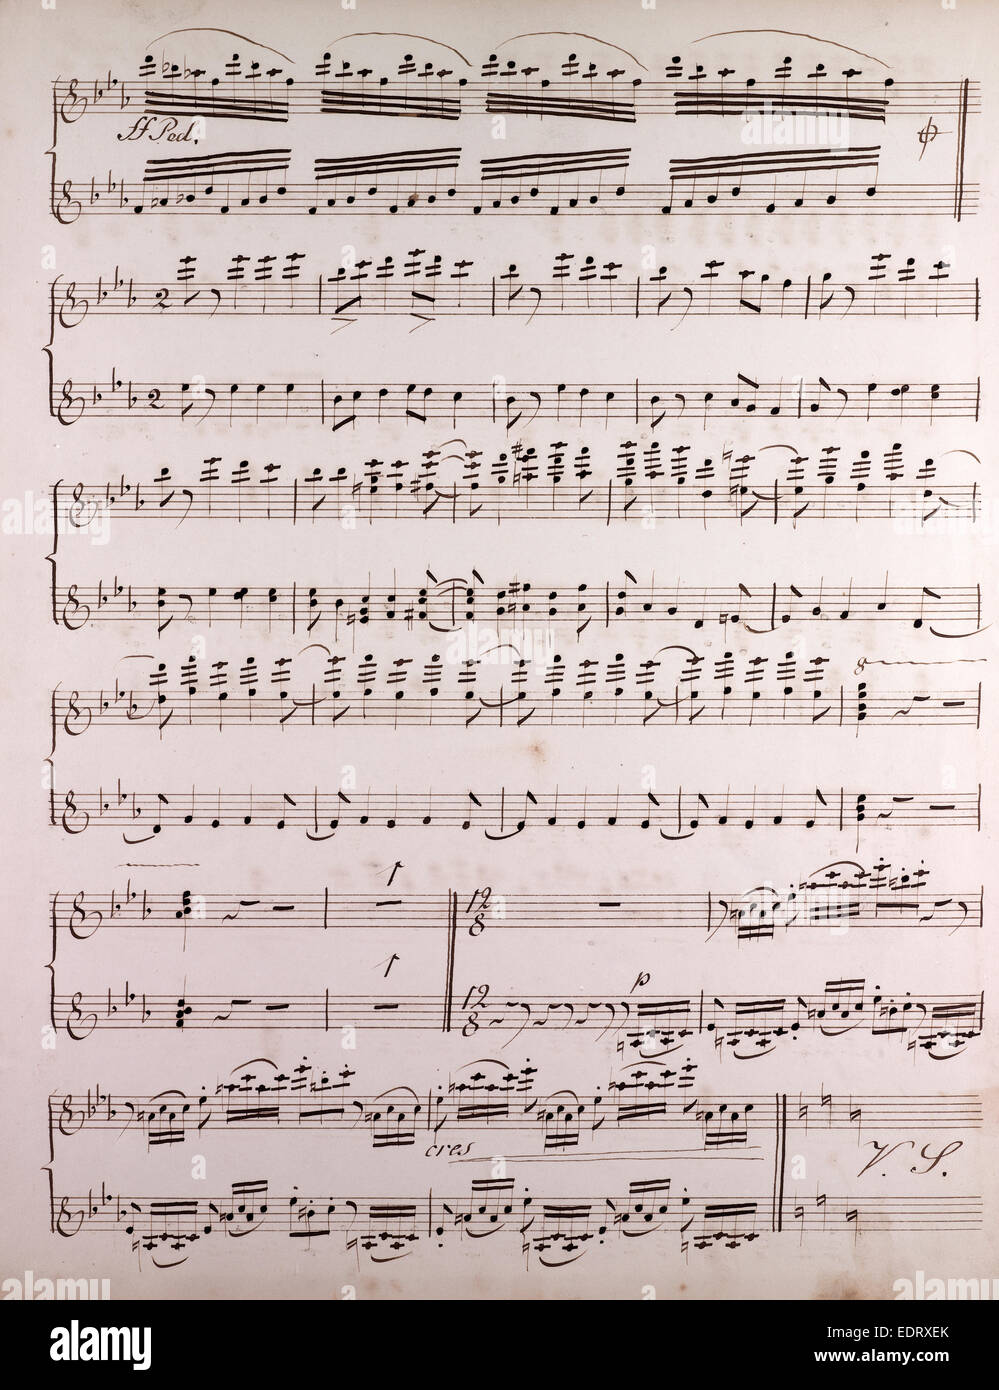 Partitions manuscrites, notes de musique, 19e siècle Banque D'Images